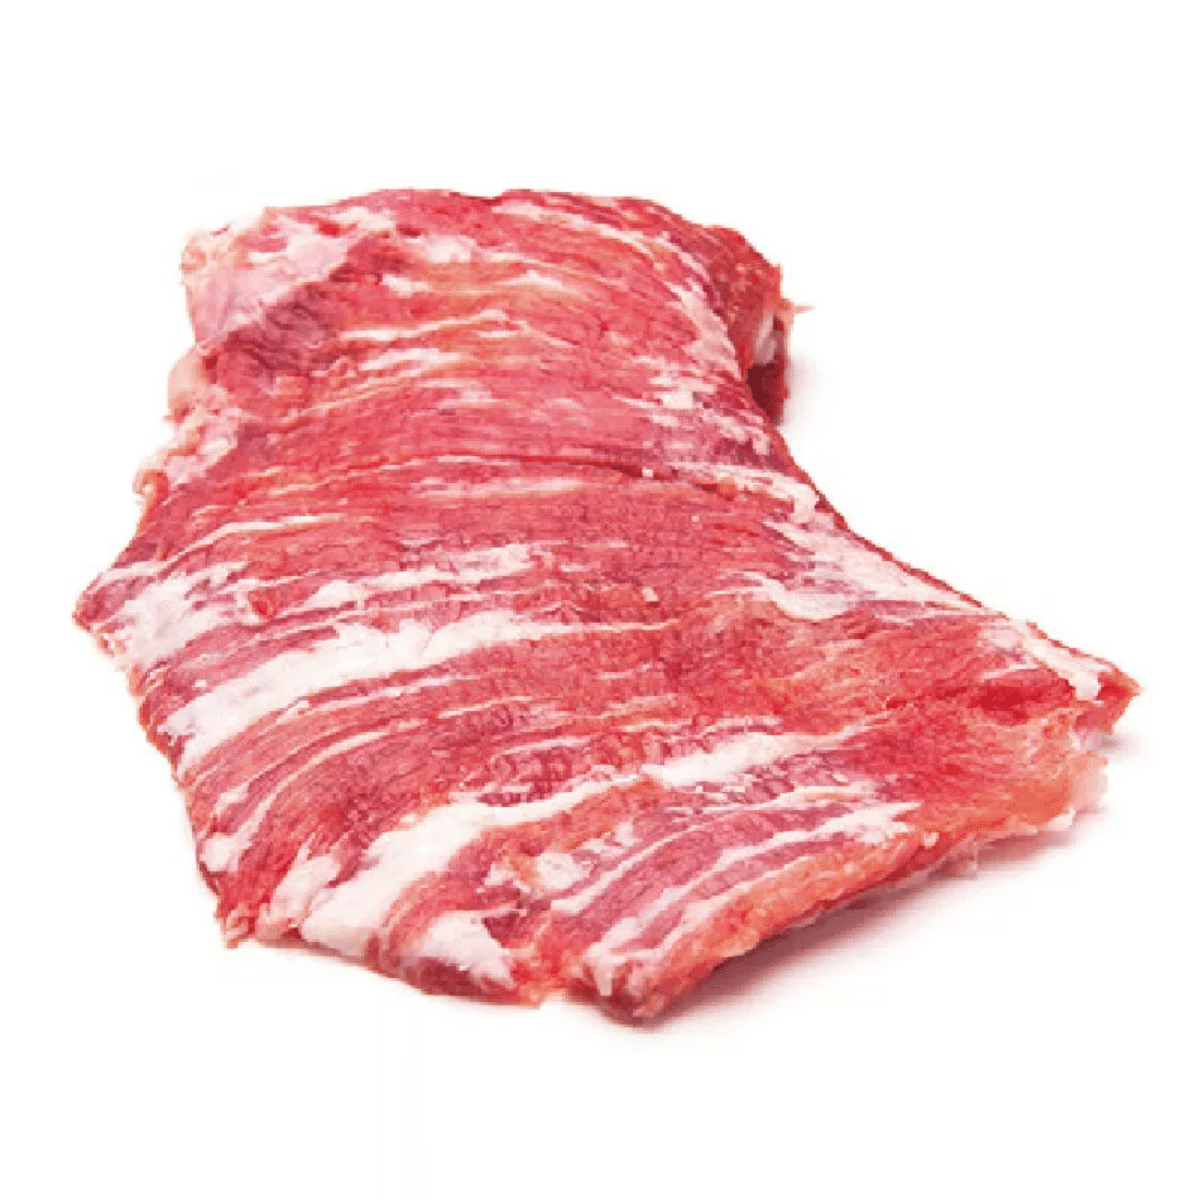 Thịt thăn lưng giữa heo Iberico Secreto (1kg - 2kg)